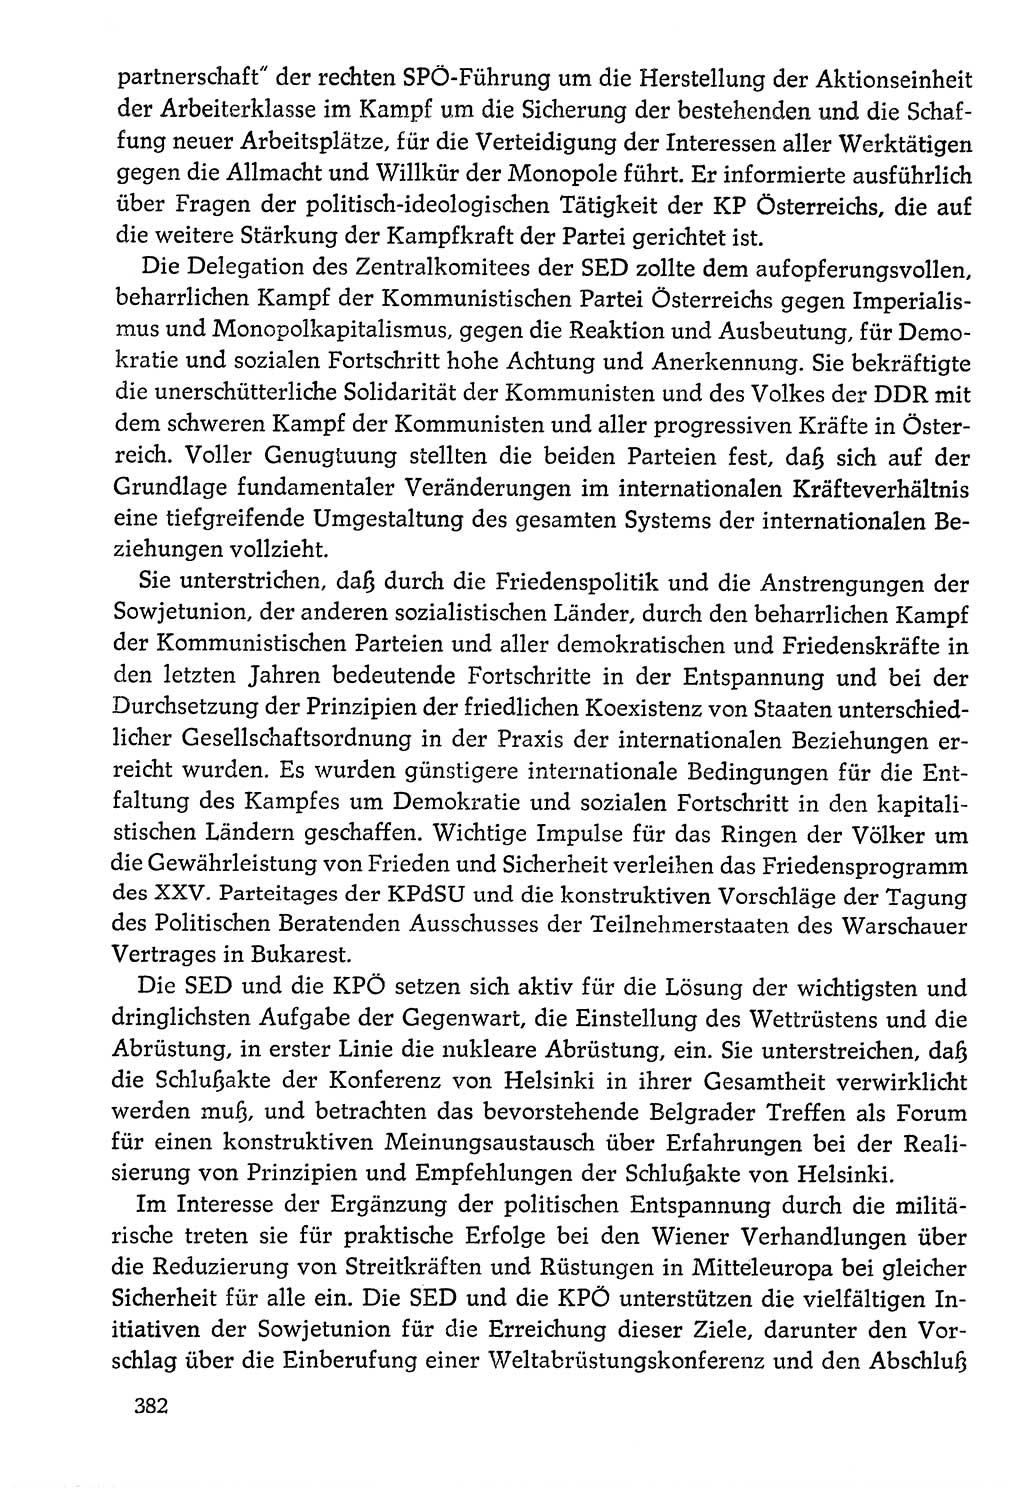 Dokumente der Sozialistischen Einheitspartei Deutschlands (SED) [Deutsche Demokratische Republik (DDR)] 1976-1977, Seite 382 (Dok. SED DDR 1976-1977, S. 382)